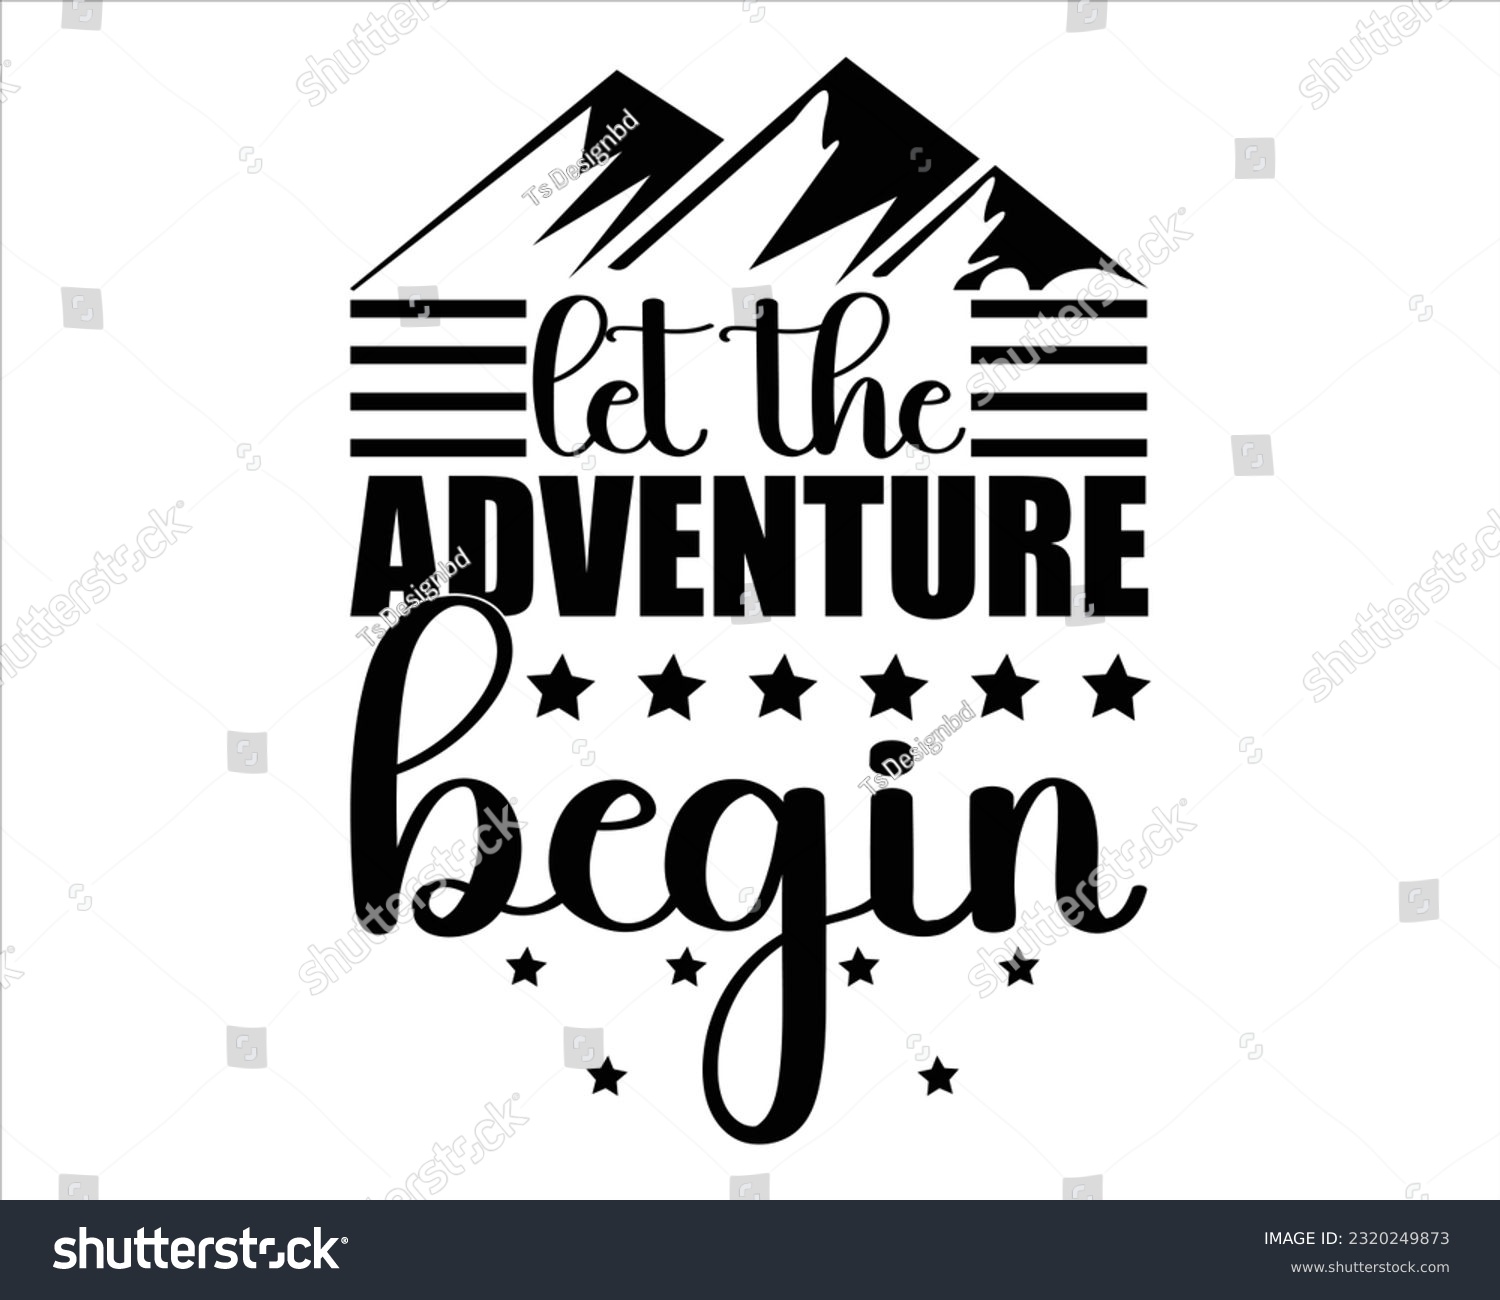 SVG of Let The Adventure Begin Svg Design, Hiking Svg Design, Mountain illustration, outdoor adventure ,Outdoor Adventure Inspiring Motivation Quote, camping, hiking svg